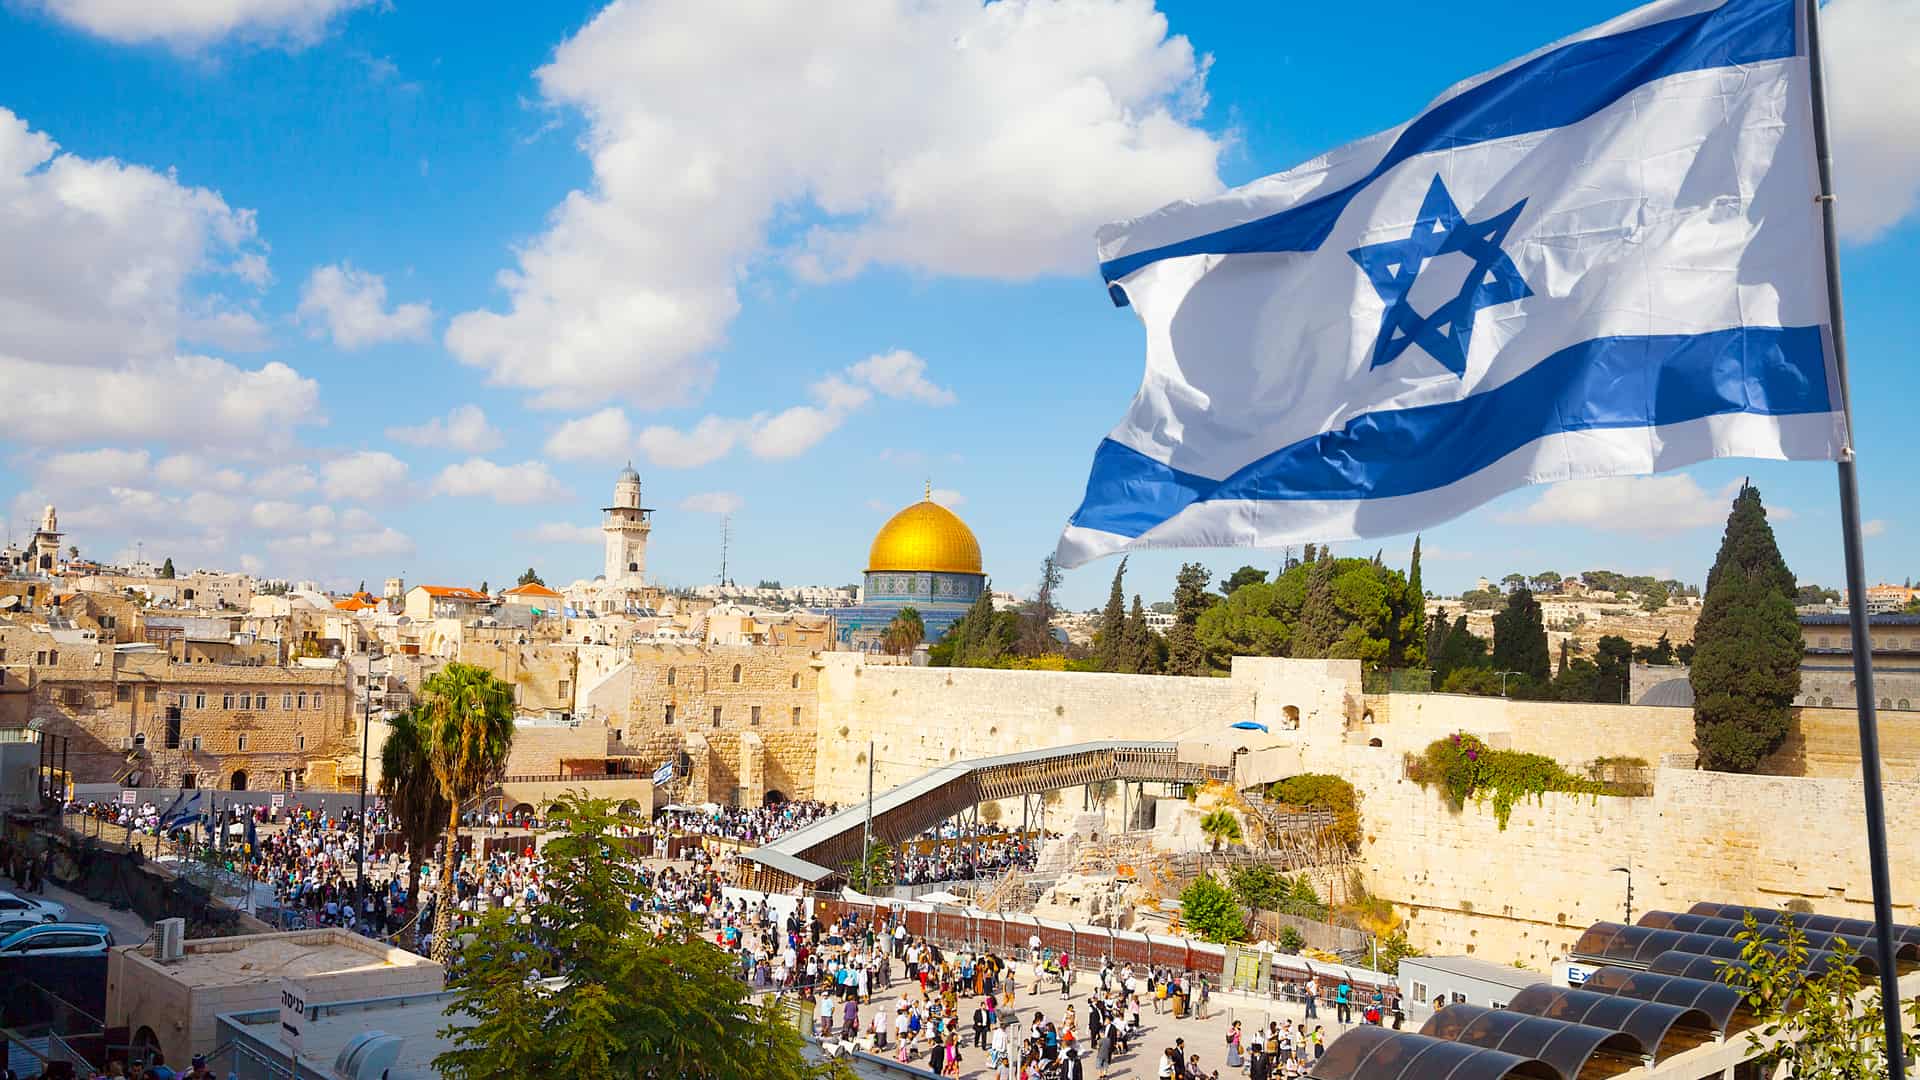 Ciudad vieja de Jerusalén el muro occidental con la bandera de Israel. Lugar para el cual se puede contratar un seguro de viaje